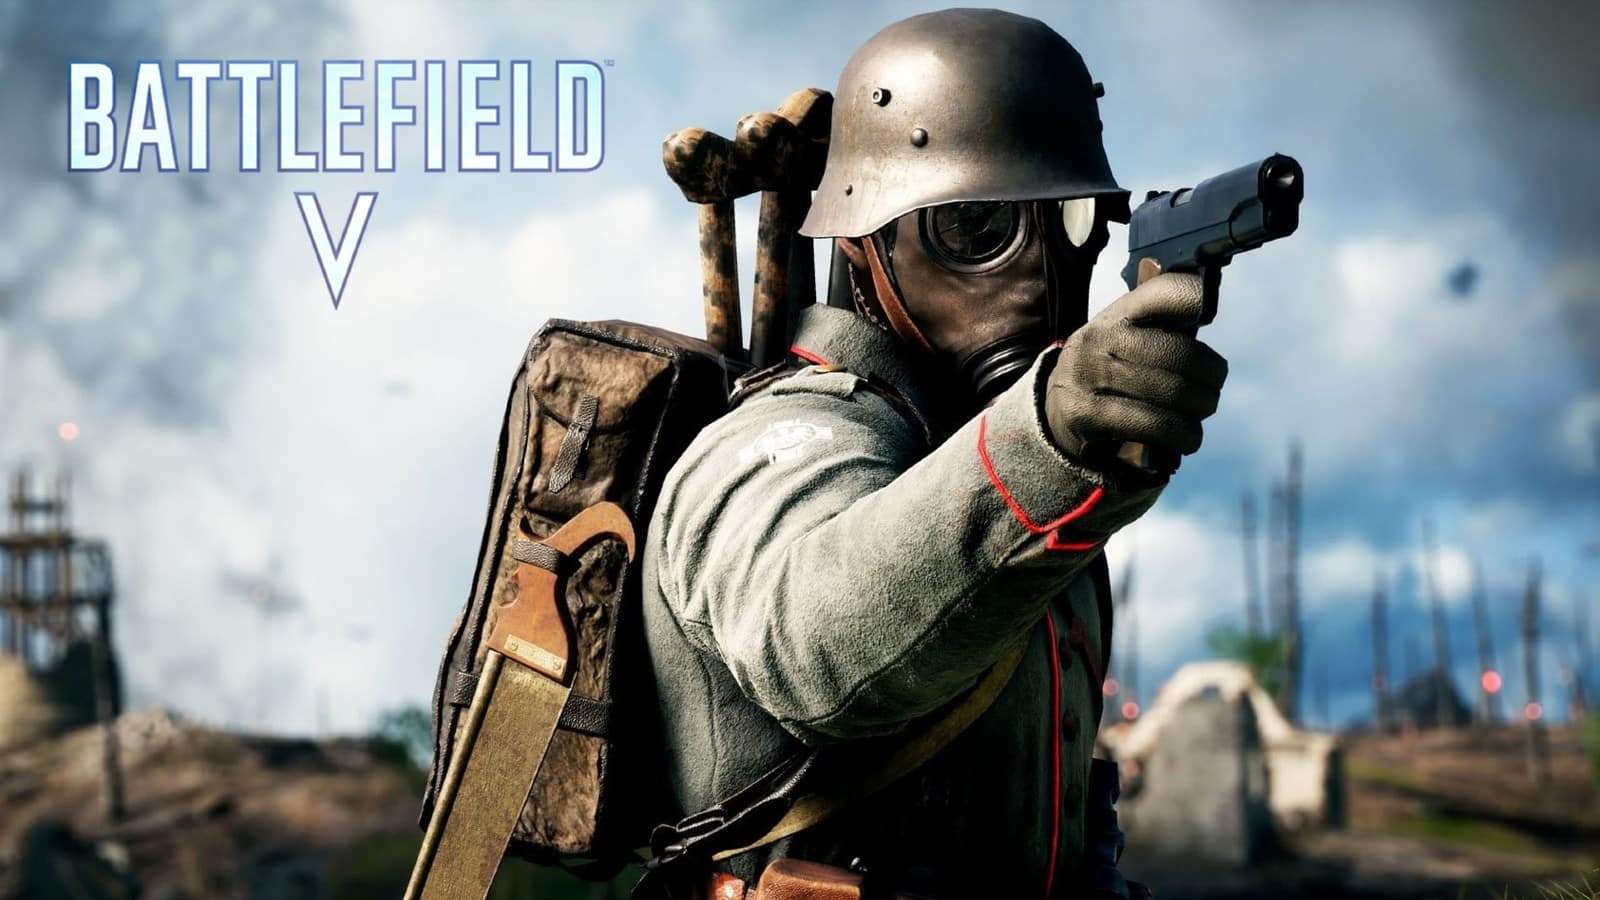 Battlefield 5 soldier with pistol